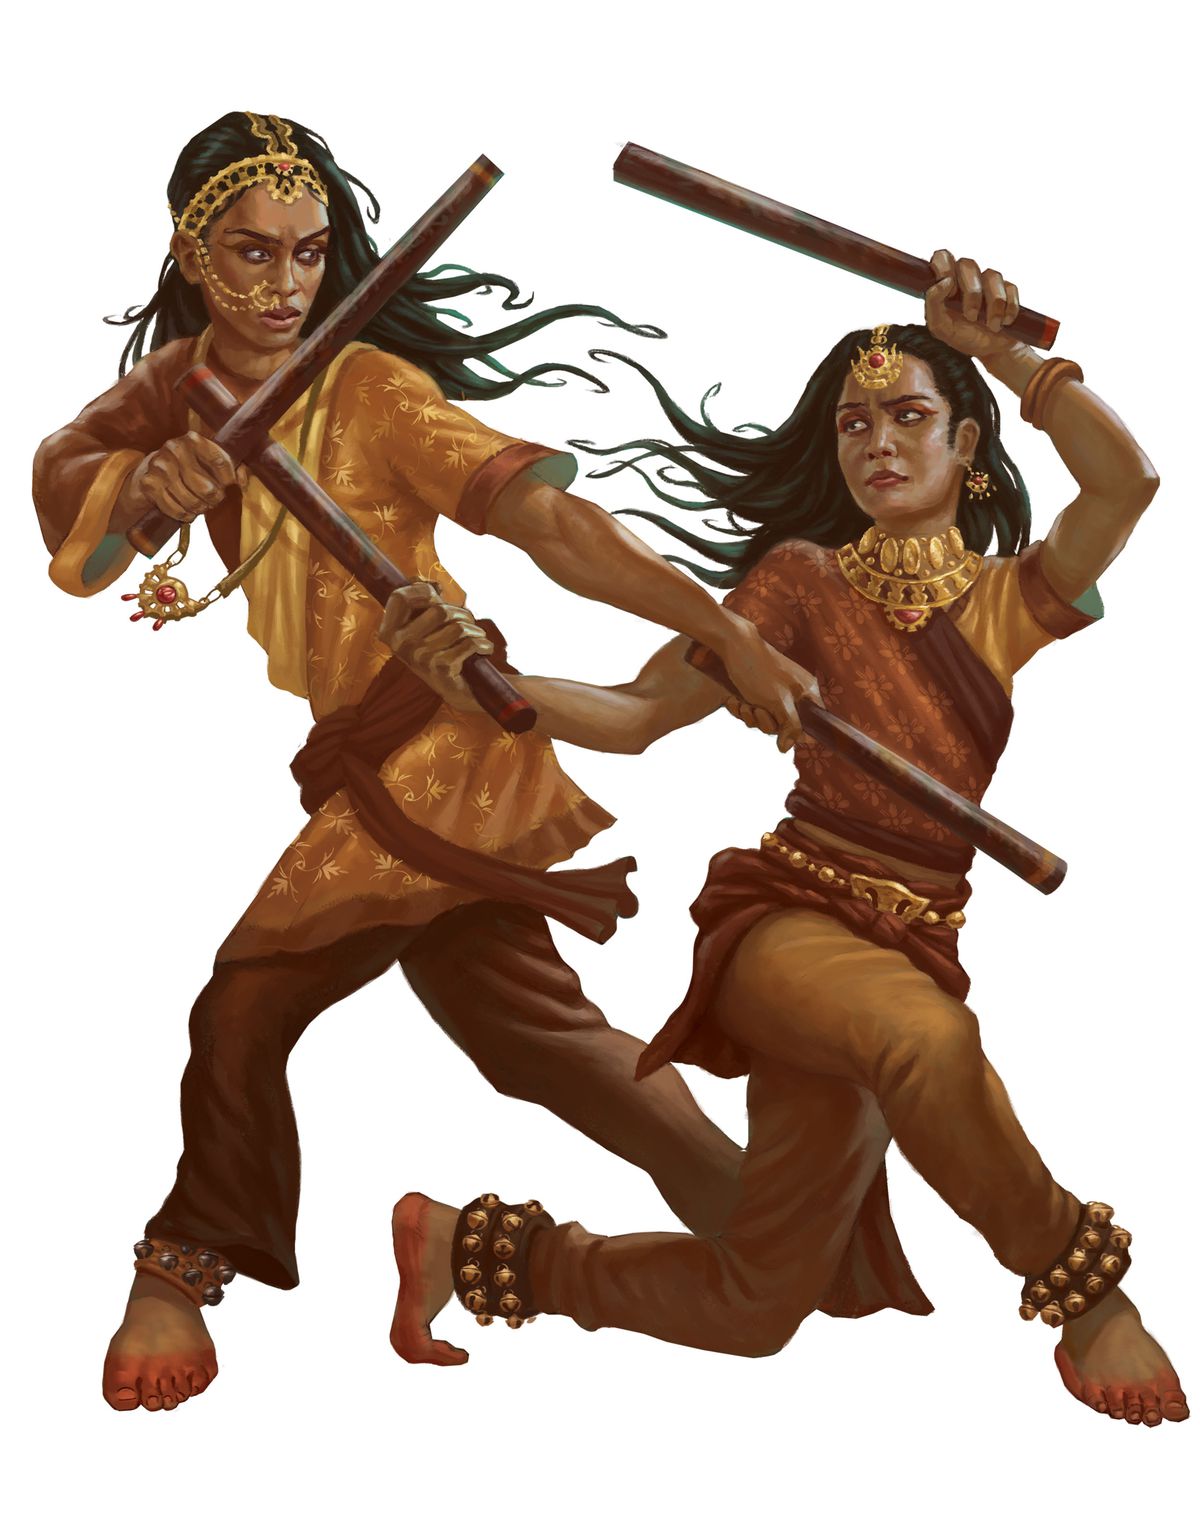 Deux femmes d'origine est-asiatique s'affrontent avec des bâtons visqueux.  Leurs vêtements sont dans des tons orange et leurs pieds sont colorés par ce qui ressemble à de la poussière ou de la teinture rouge.